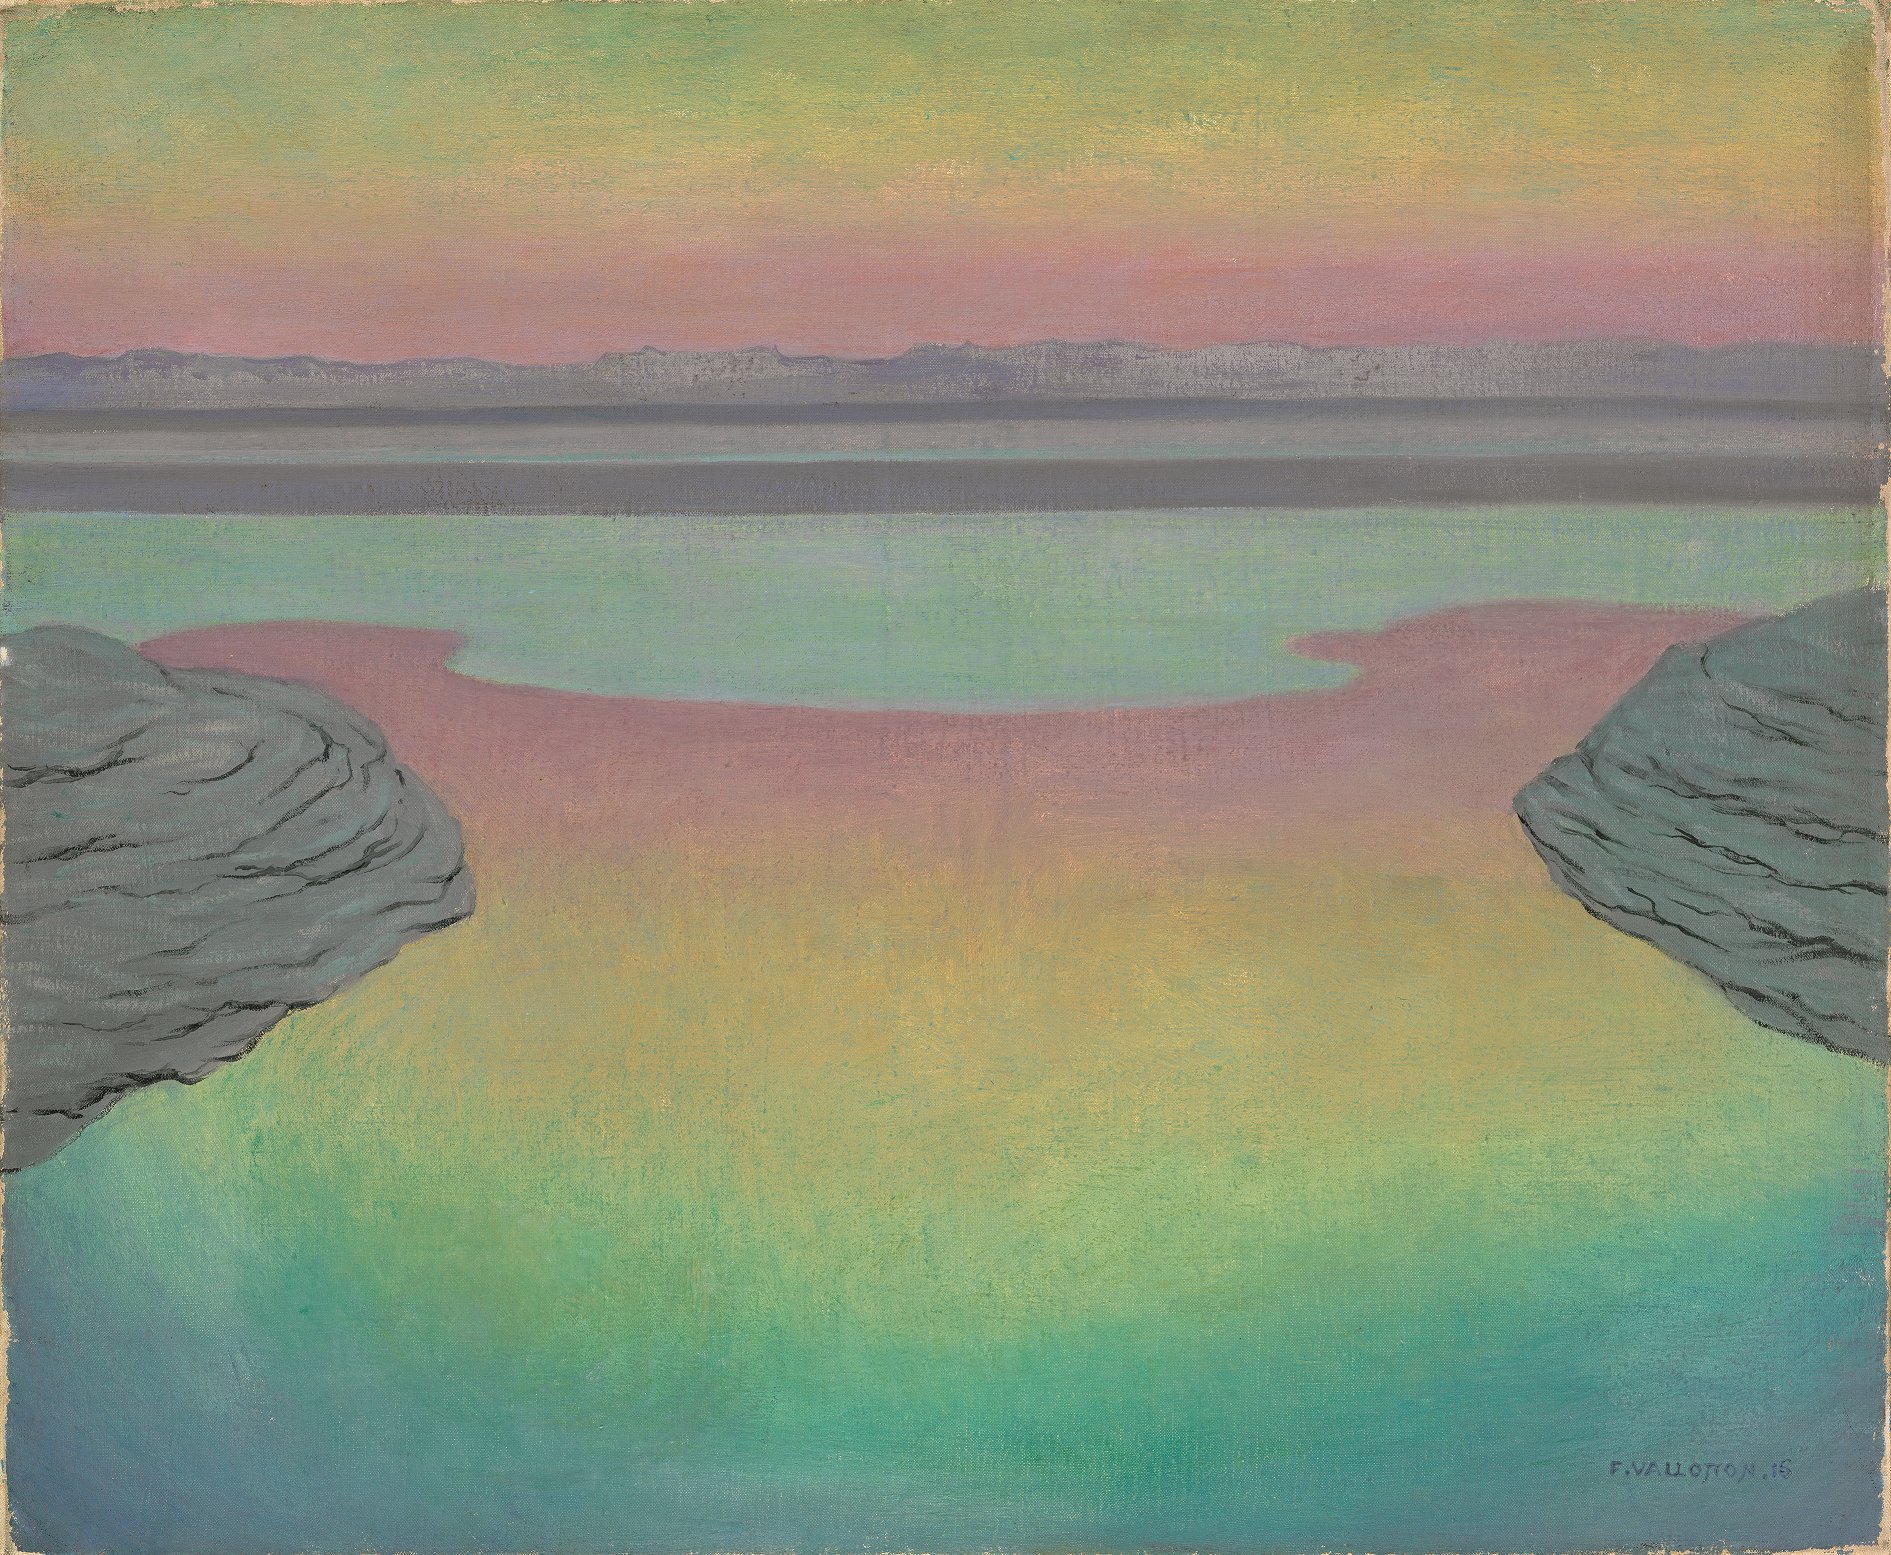 Högt tidvatten i kvällsljus by Félix Vallotton - 1915 - 61 × 73 cm 